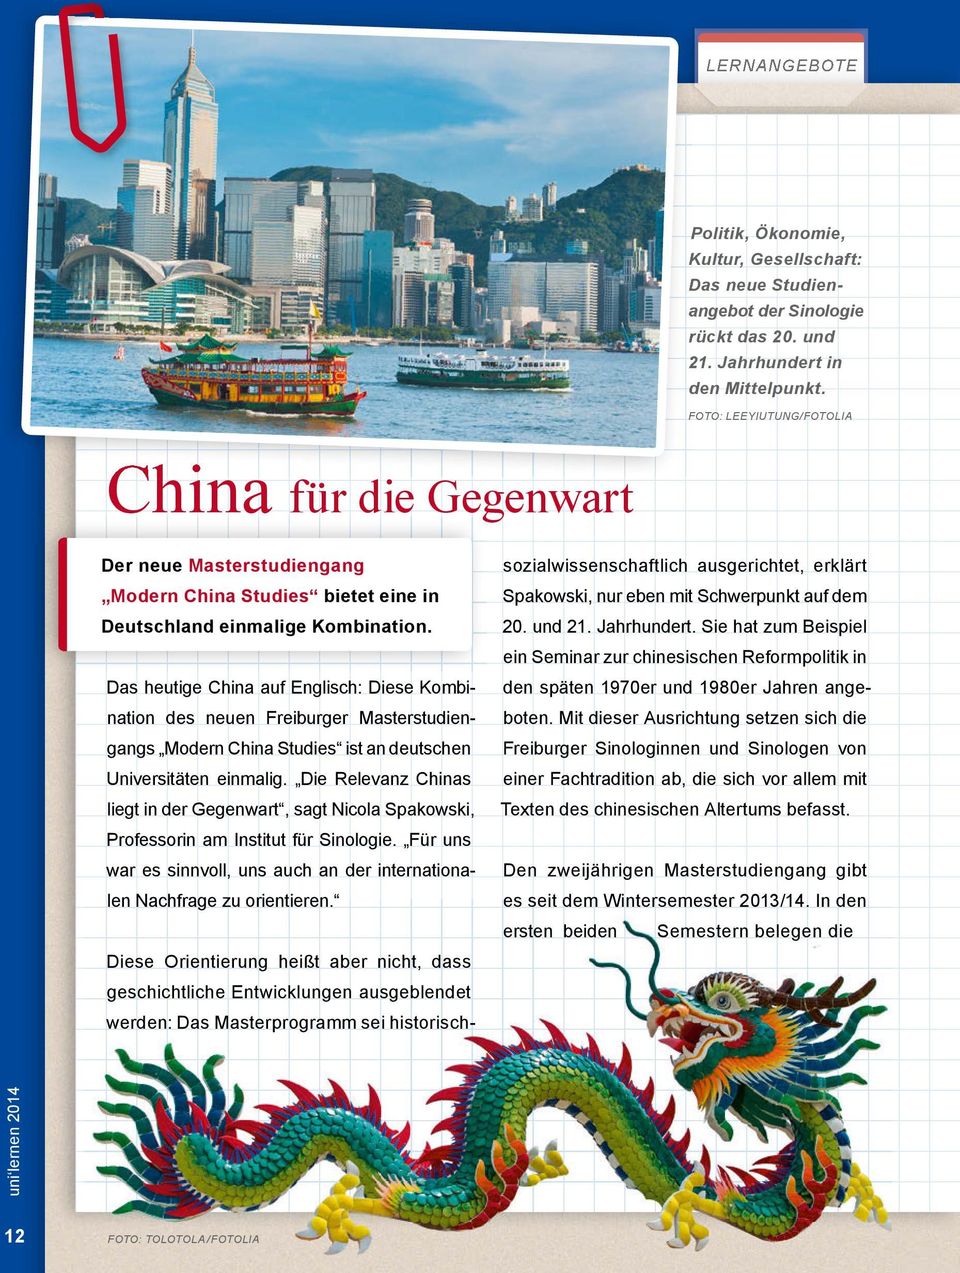 Das heutige China auf Englisch: Diese Kombination des neuen Freiburger Masterstudiengangs Modern China Studies ist an deutschen Universitäten einmalig.